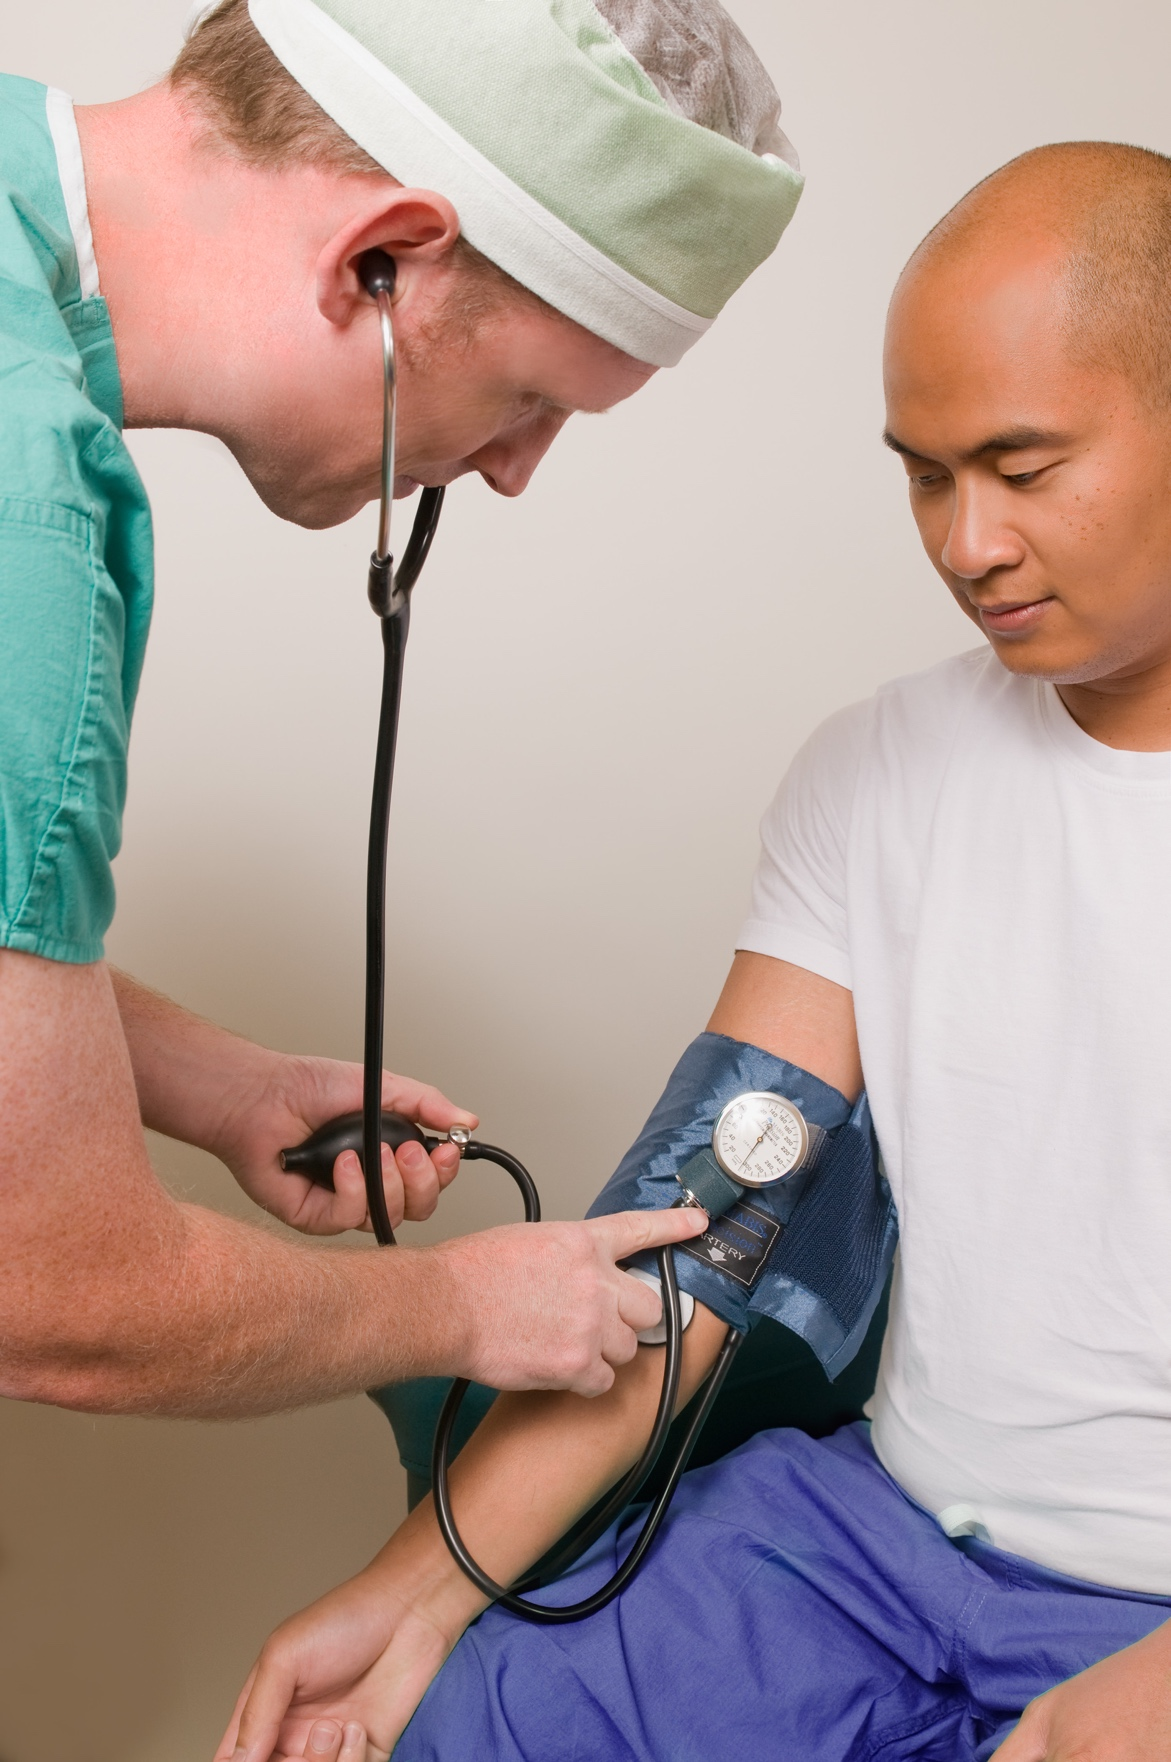 A nurse checking a man’s blood pressure.